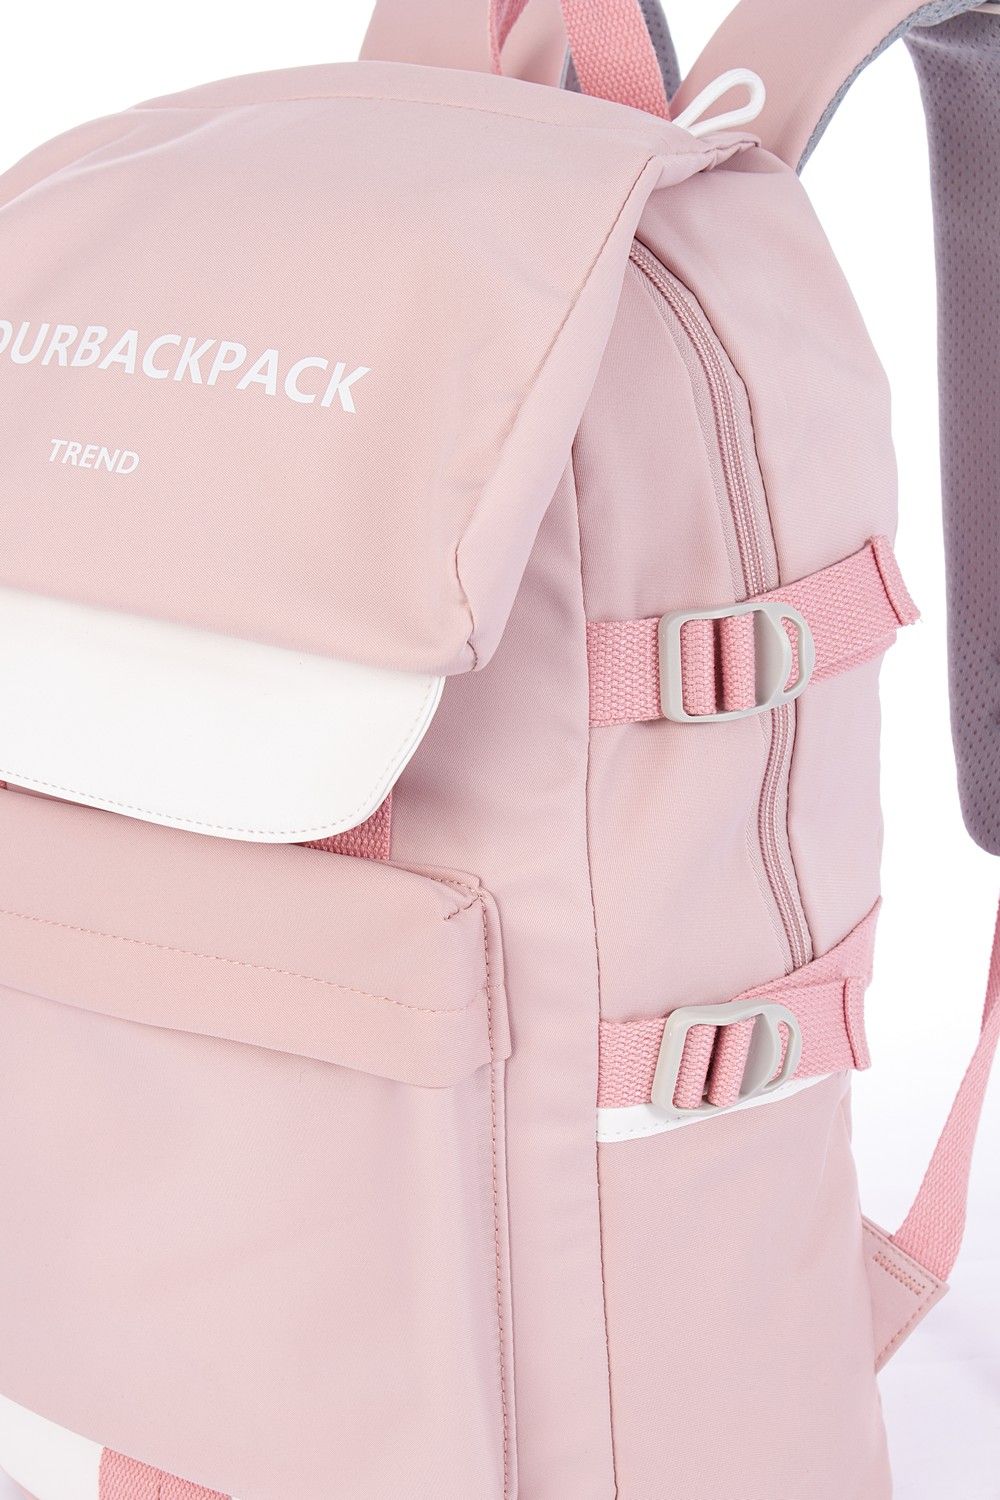 Рюкзак женский розовый, однотонный, городской, с широкими лямками, 21л.